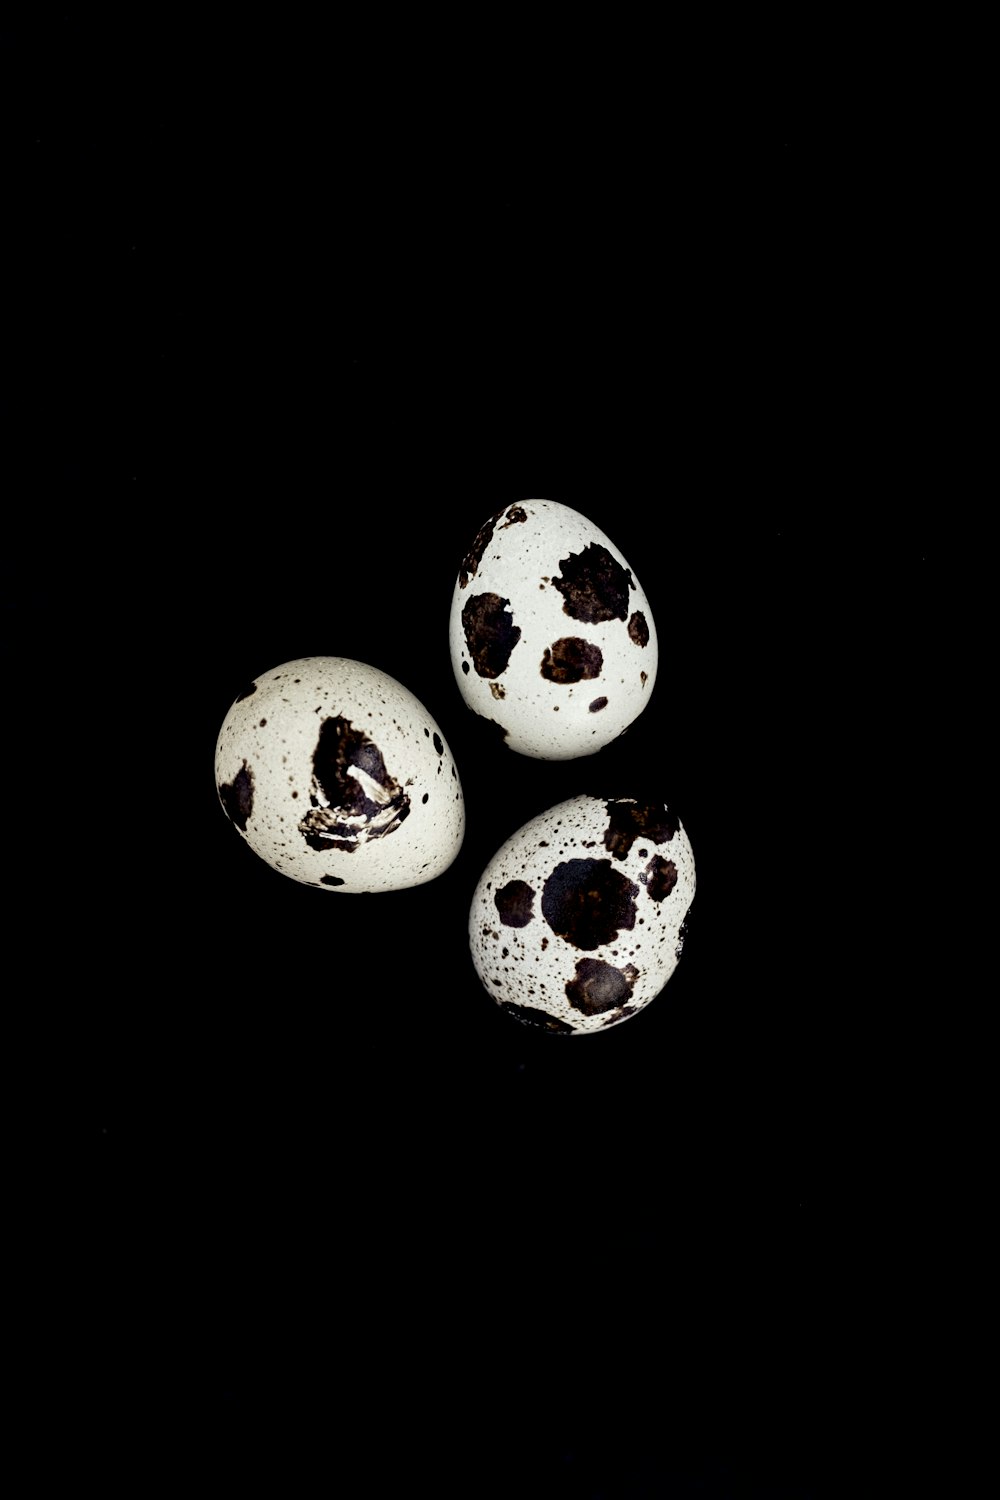 tre uova bianche e nere